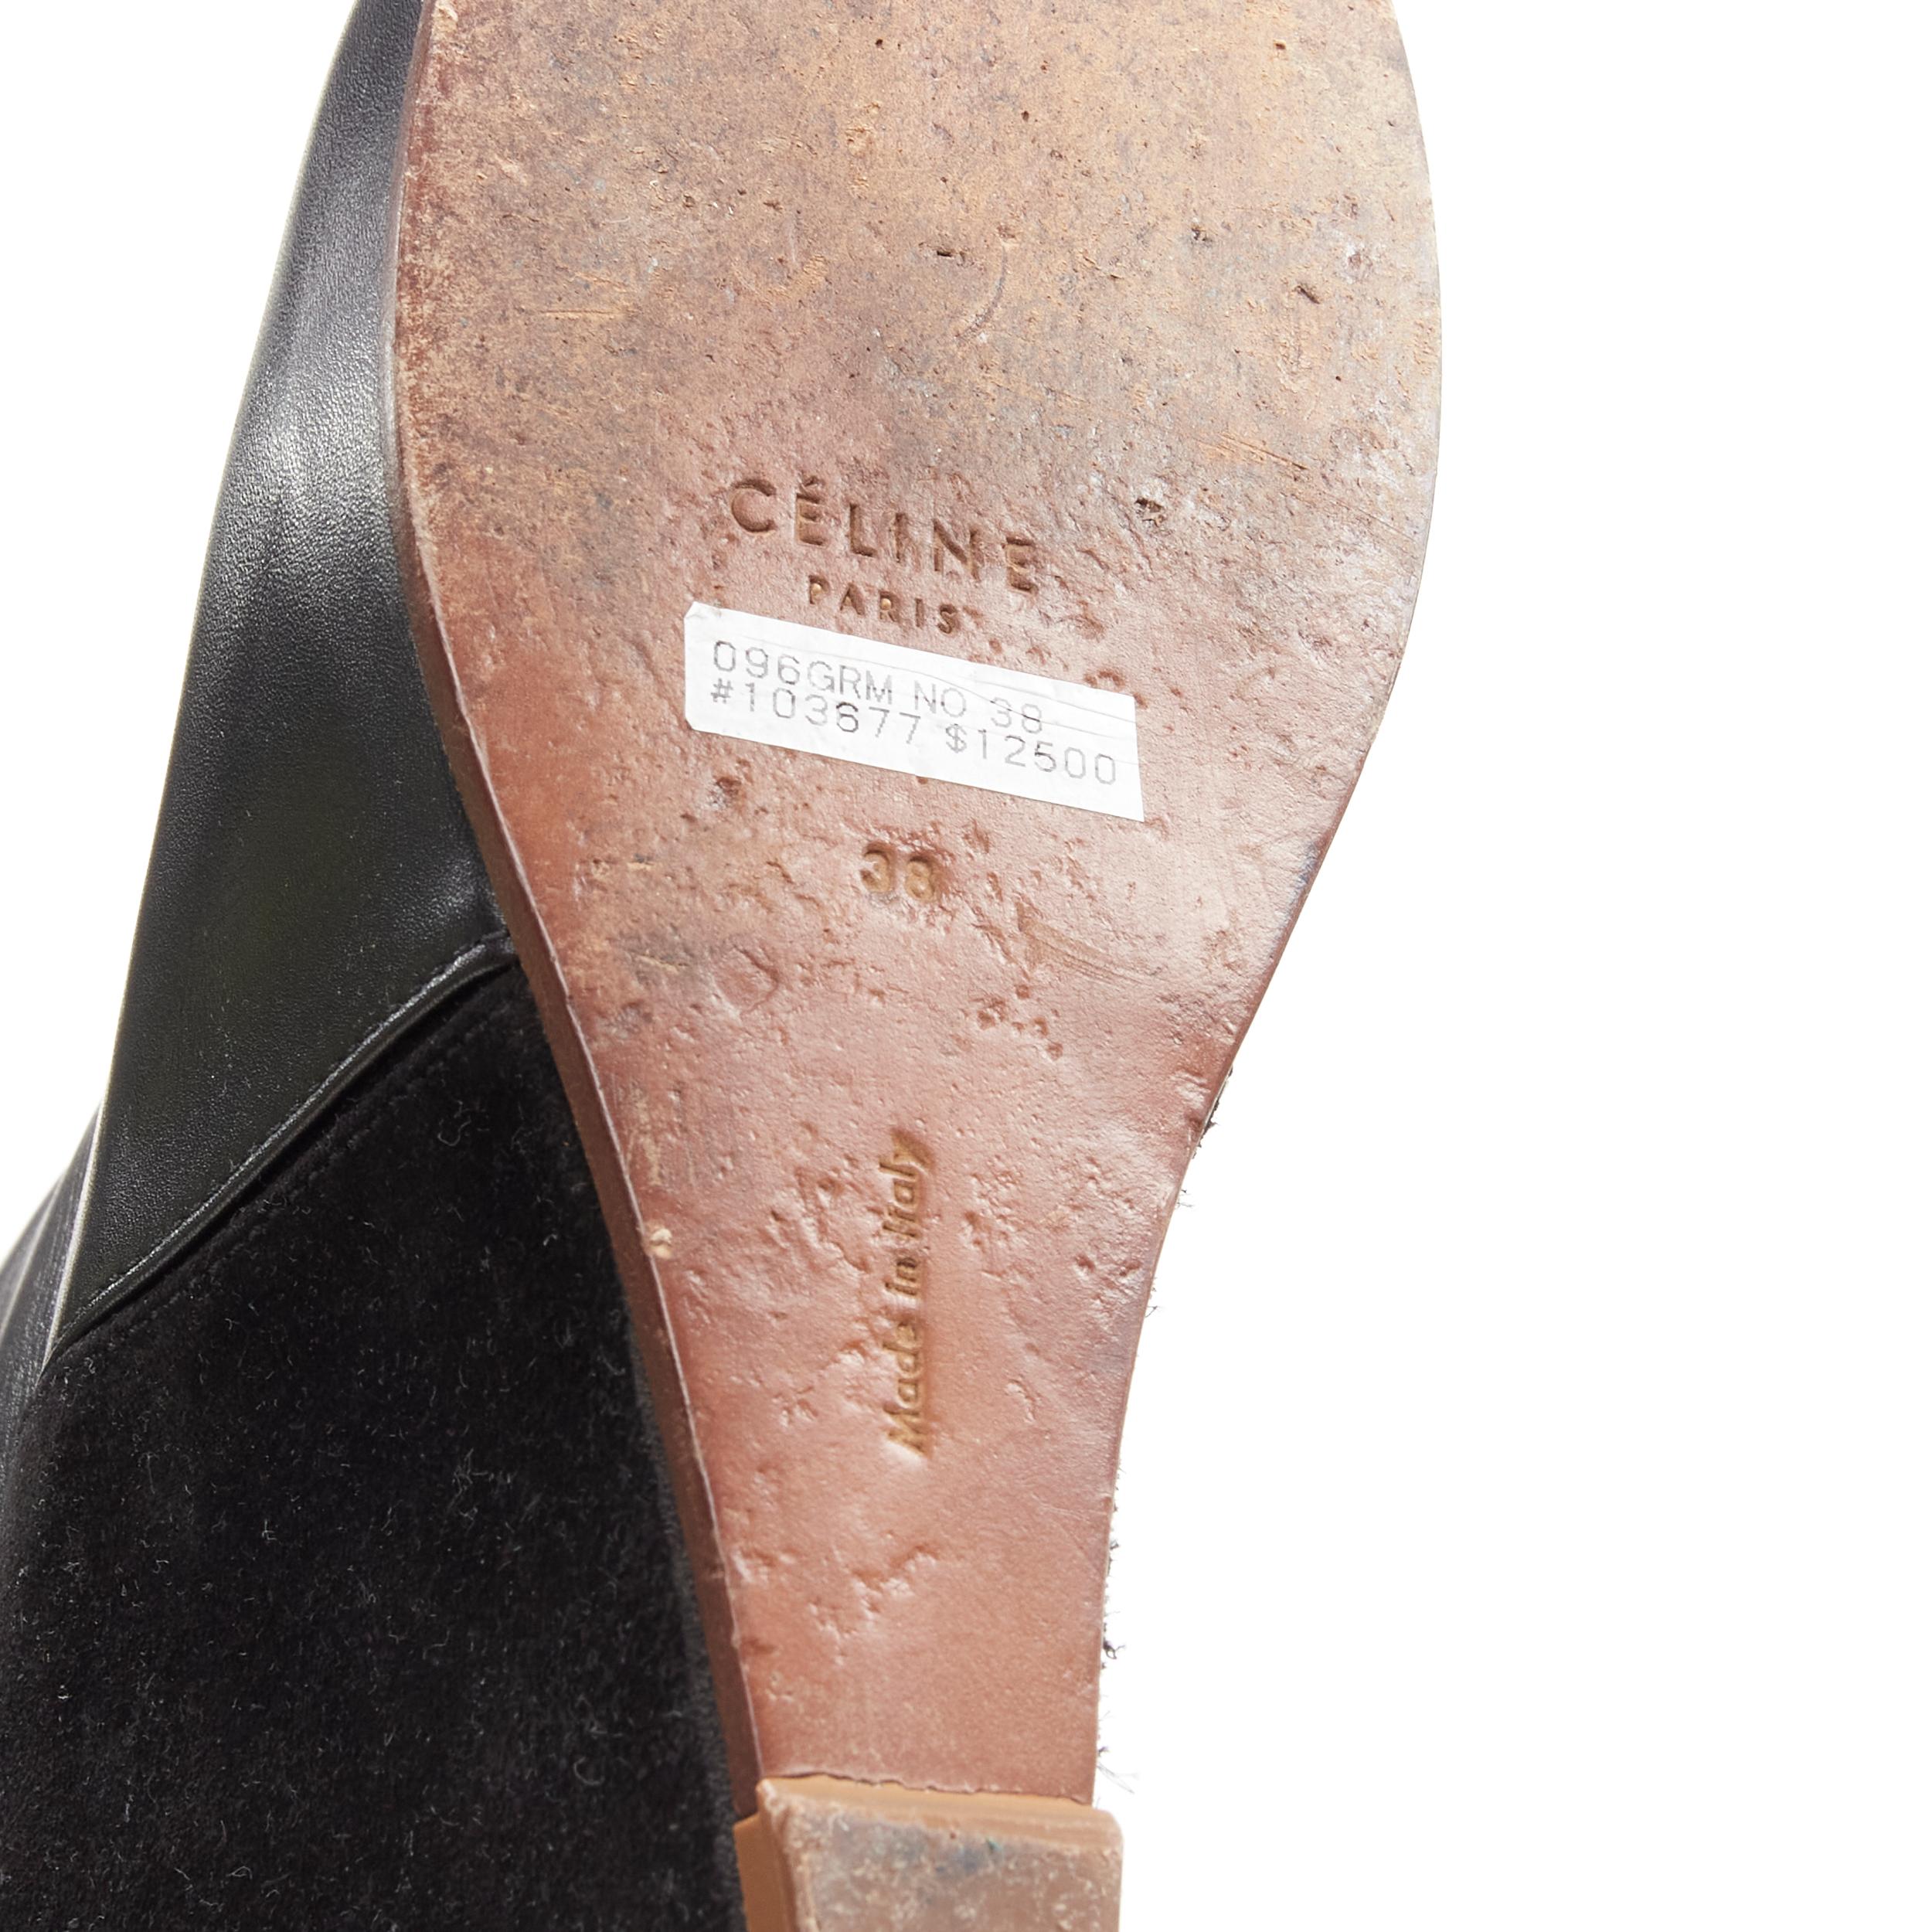 OLD CELINE Phoebe Philo black leather suede 50/50 platform wedge boot EU38 For Sale 5